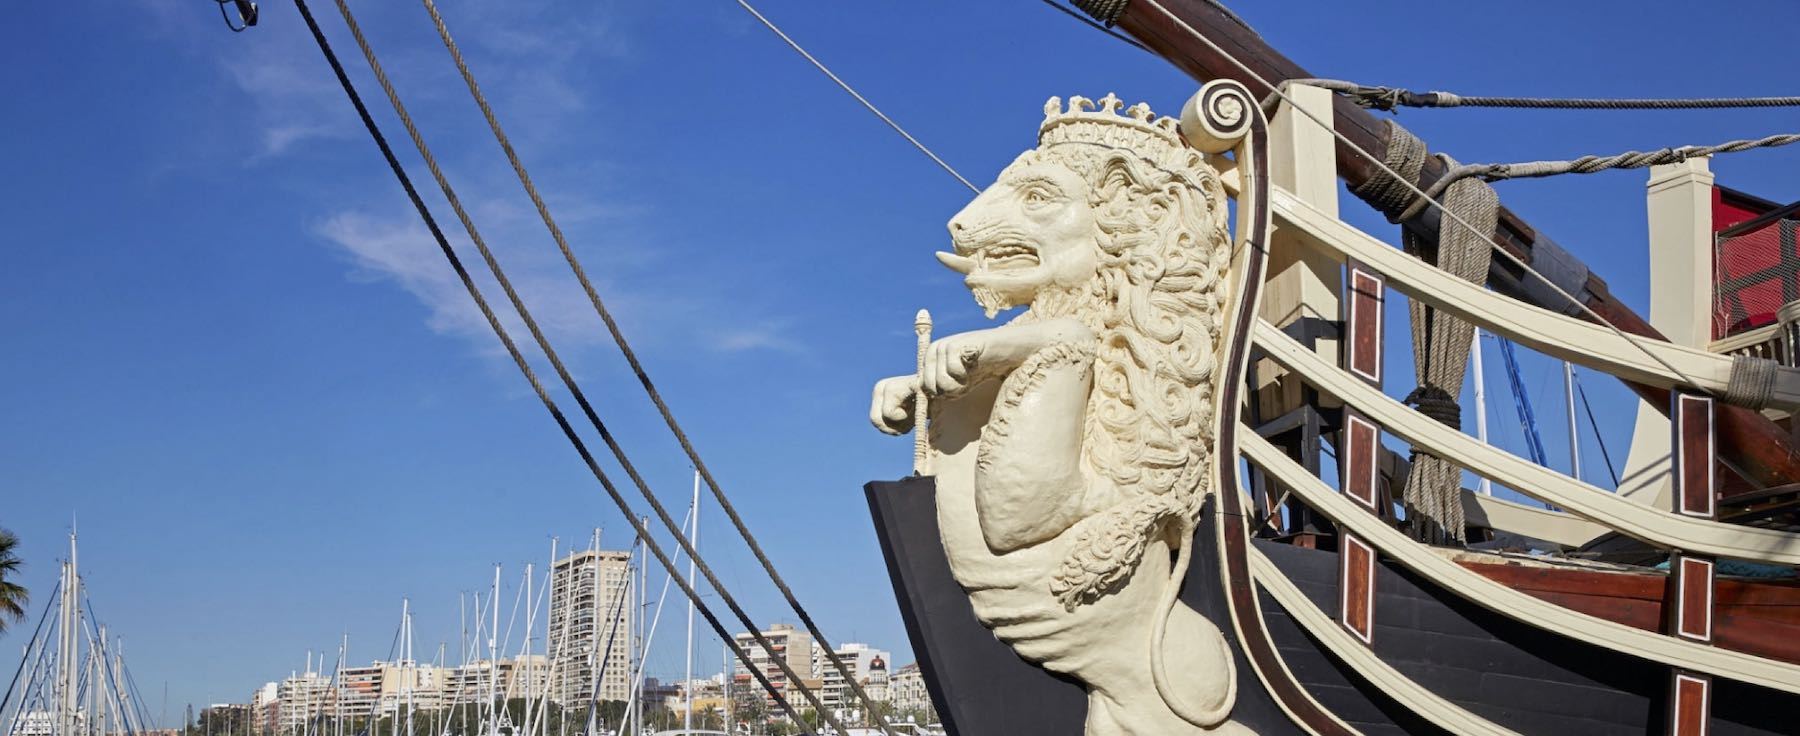 Statue Lion sur la proue d'un navire